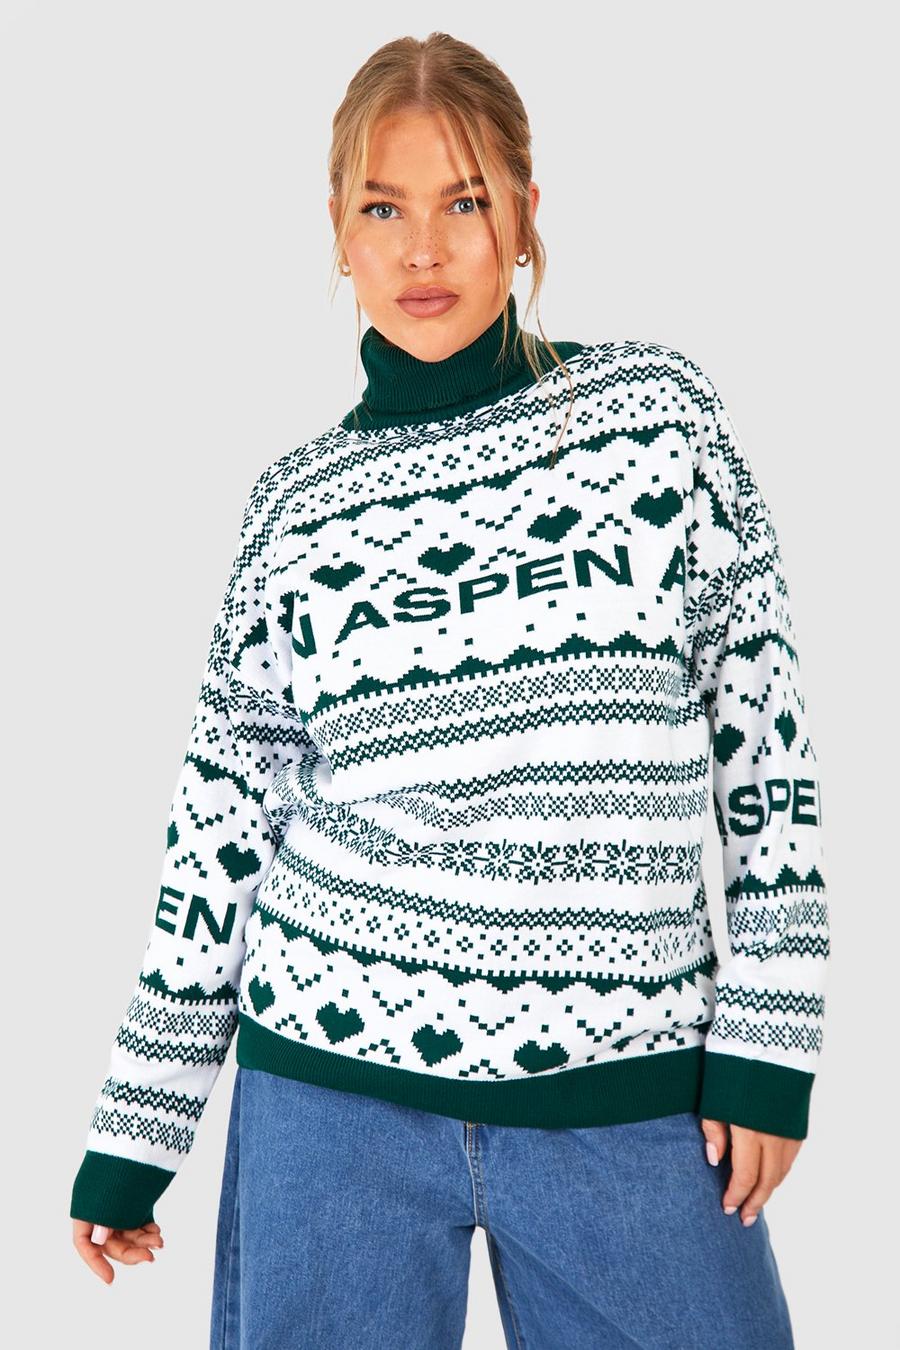 Maglione natalizio Plus Size a collo alto con slogan Aspen e motivi Fairisle, Bottle